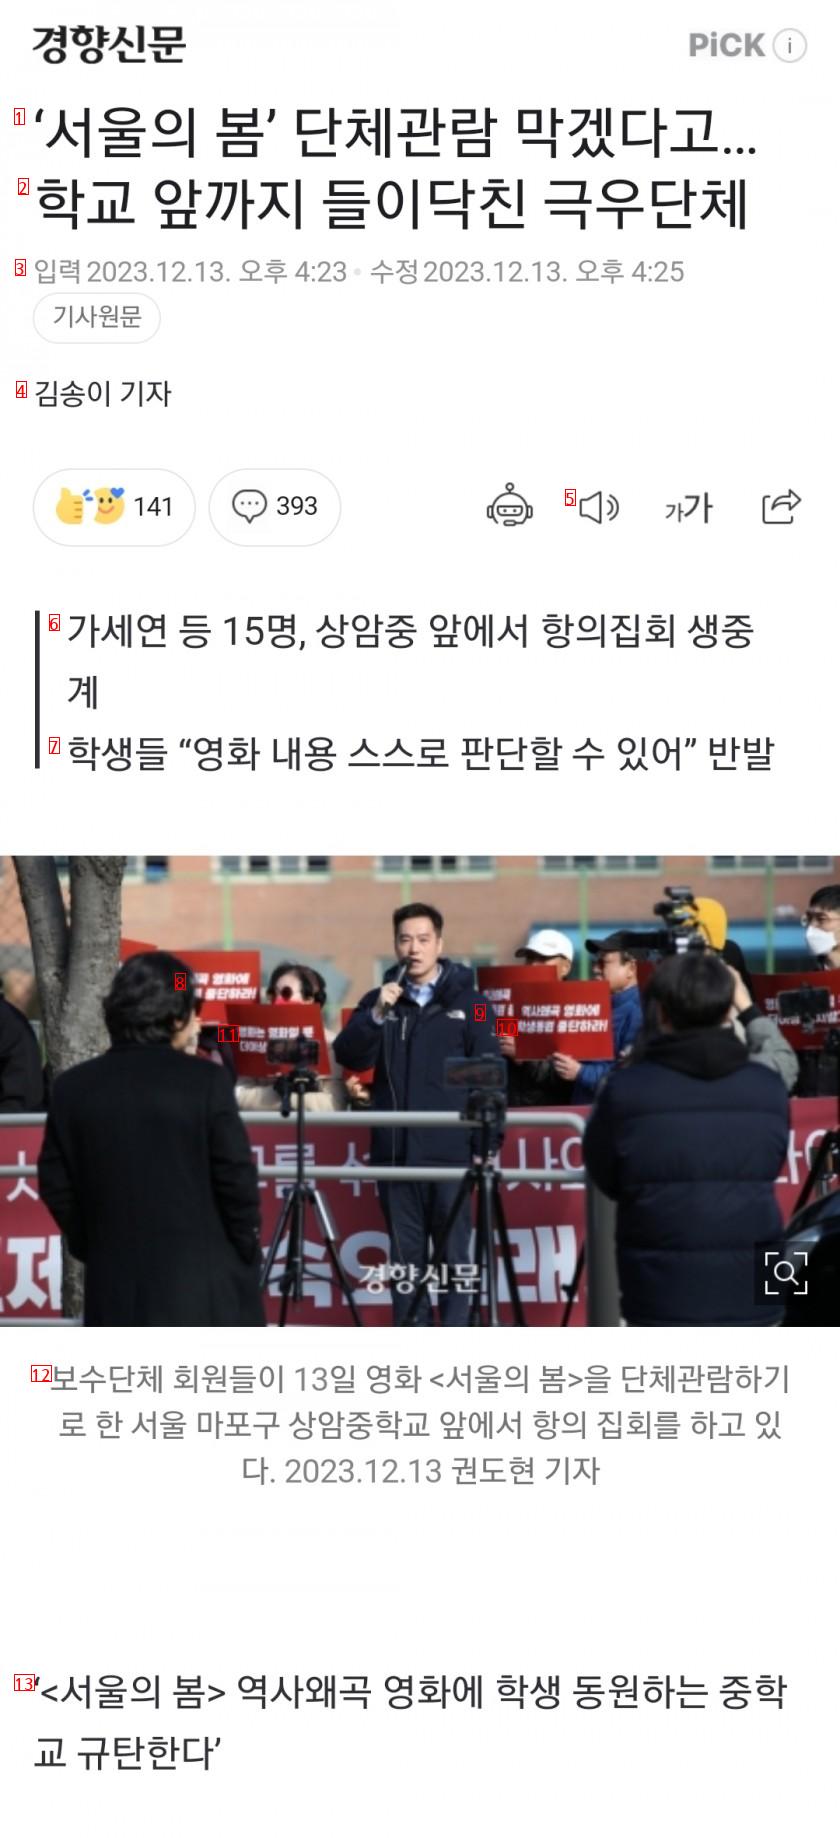 「ソウルの春」団体観覧を阻止するために学校前まで押し寄せた極右団体